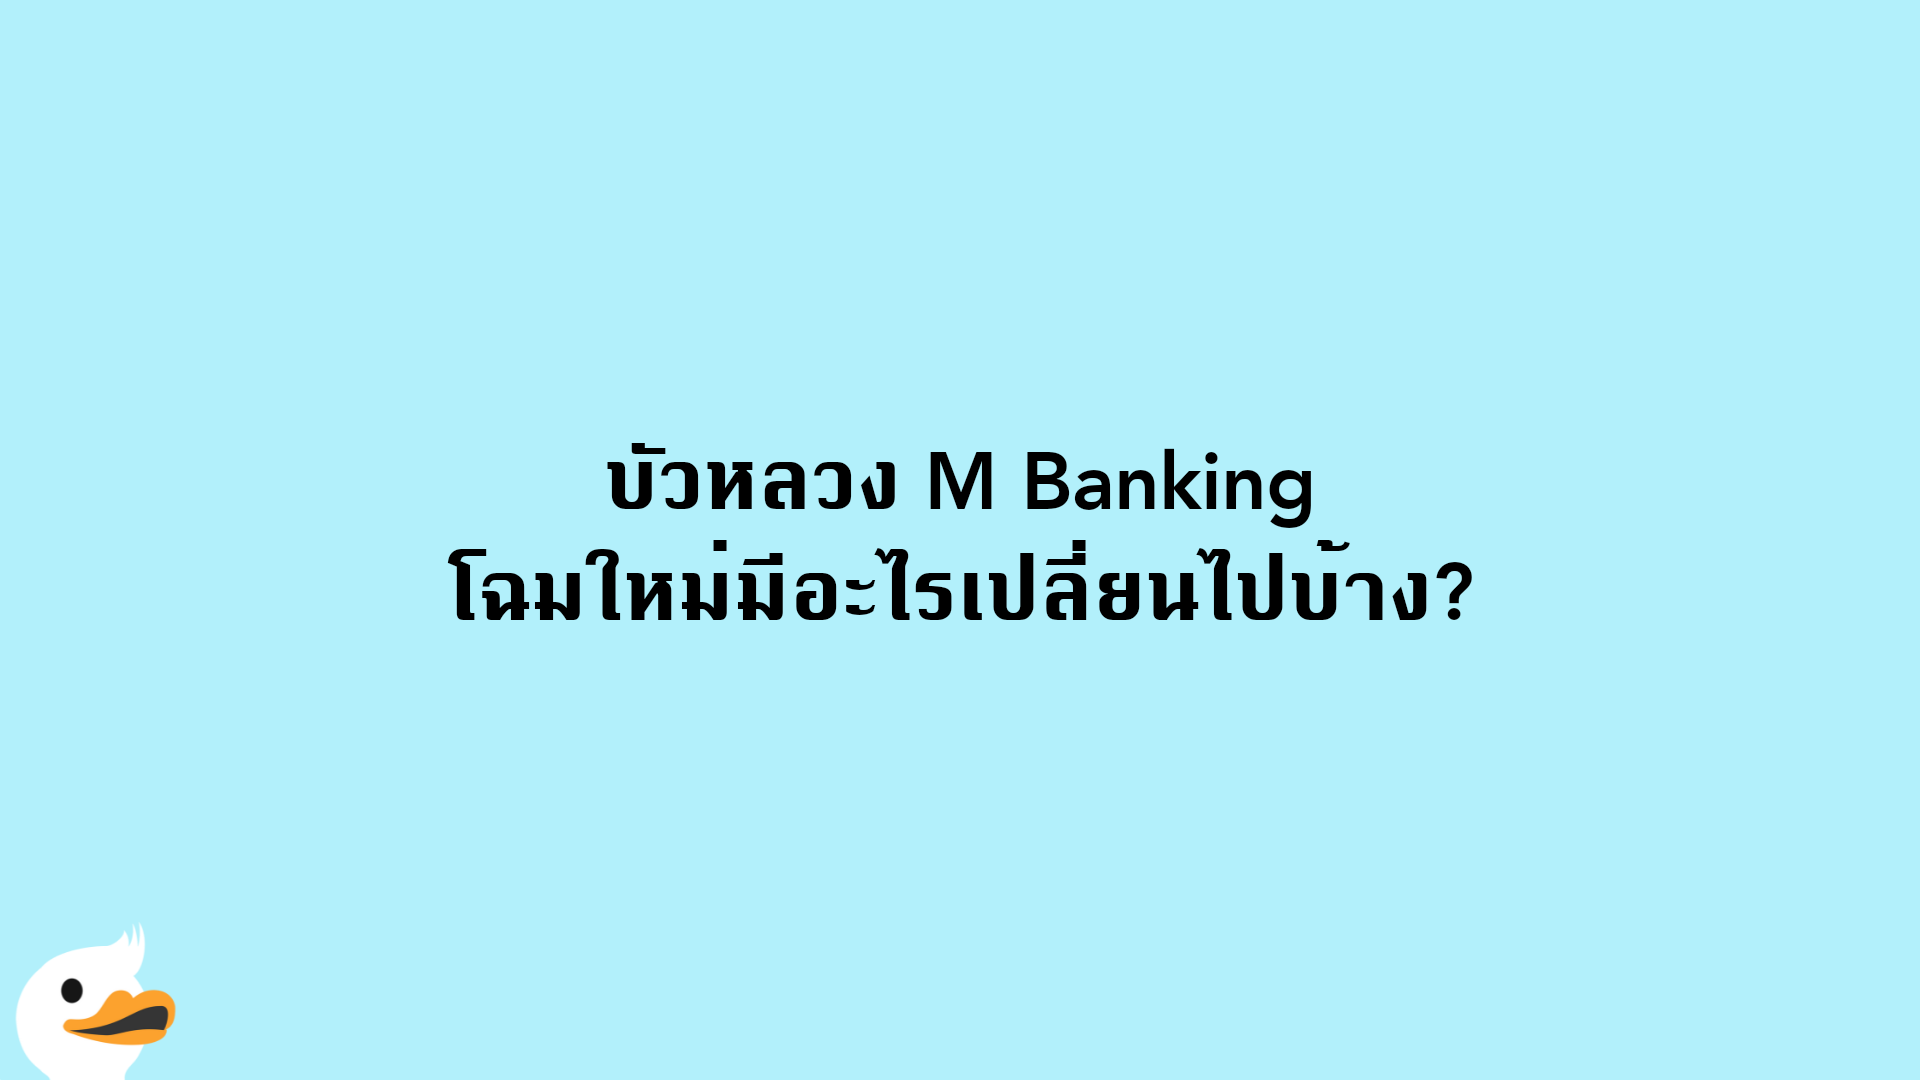 บัวหลวง M Banking โฉมใหม่มีอะไรเปลี่ยนไปบ้าง?